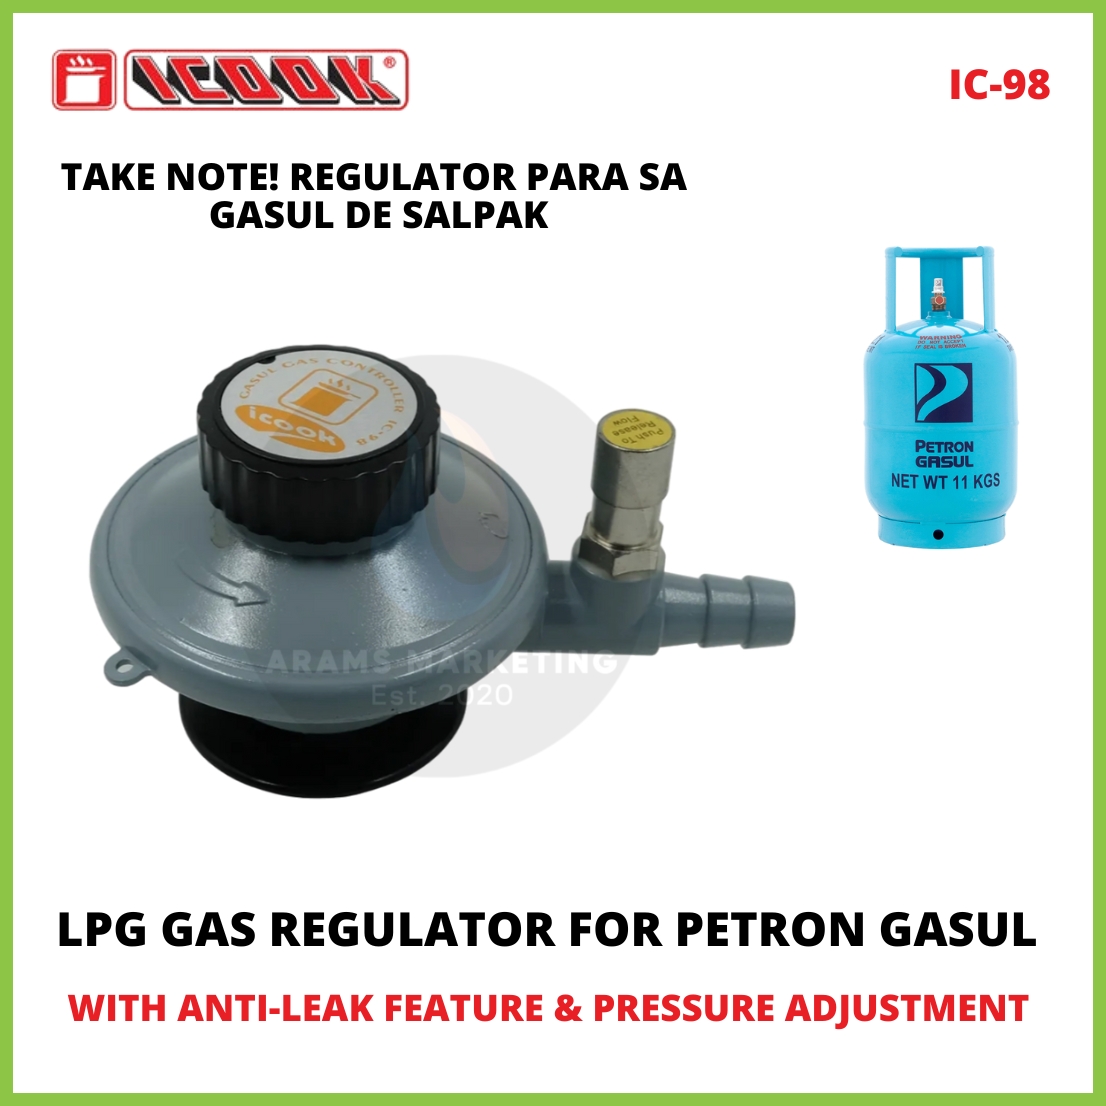 Petron Gasul Regulator with Safety Feature, TPA Original